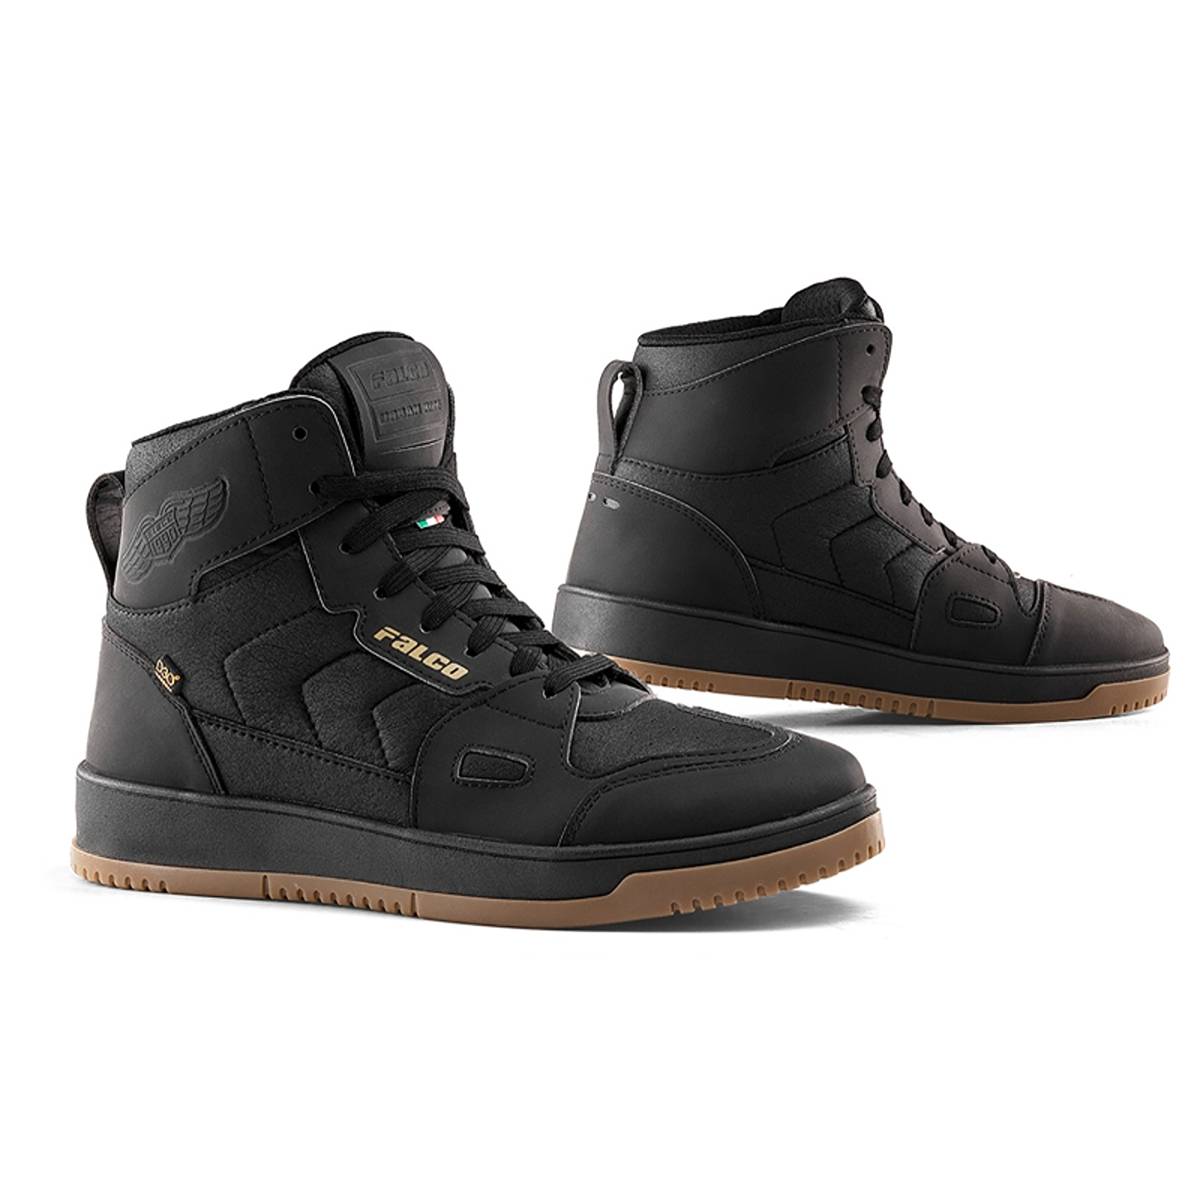 Falco Harlem Shoes Black Size 41